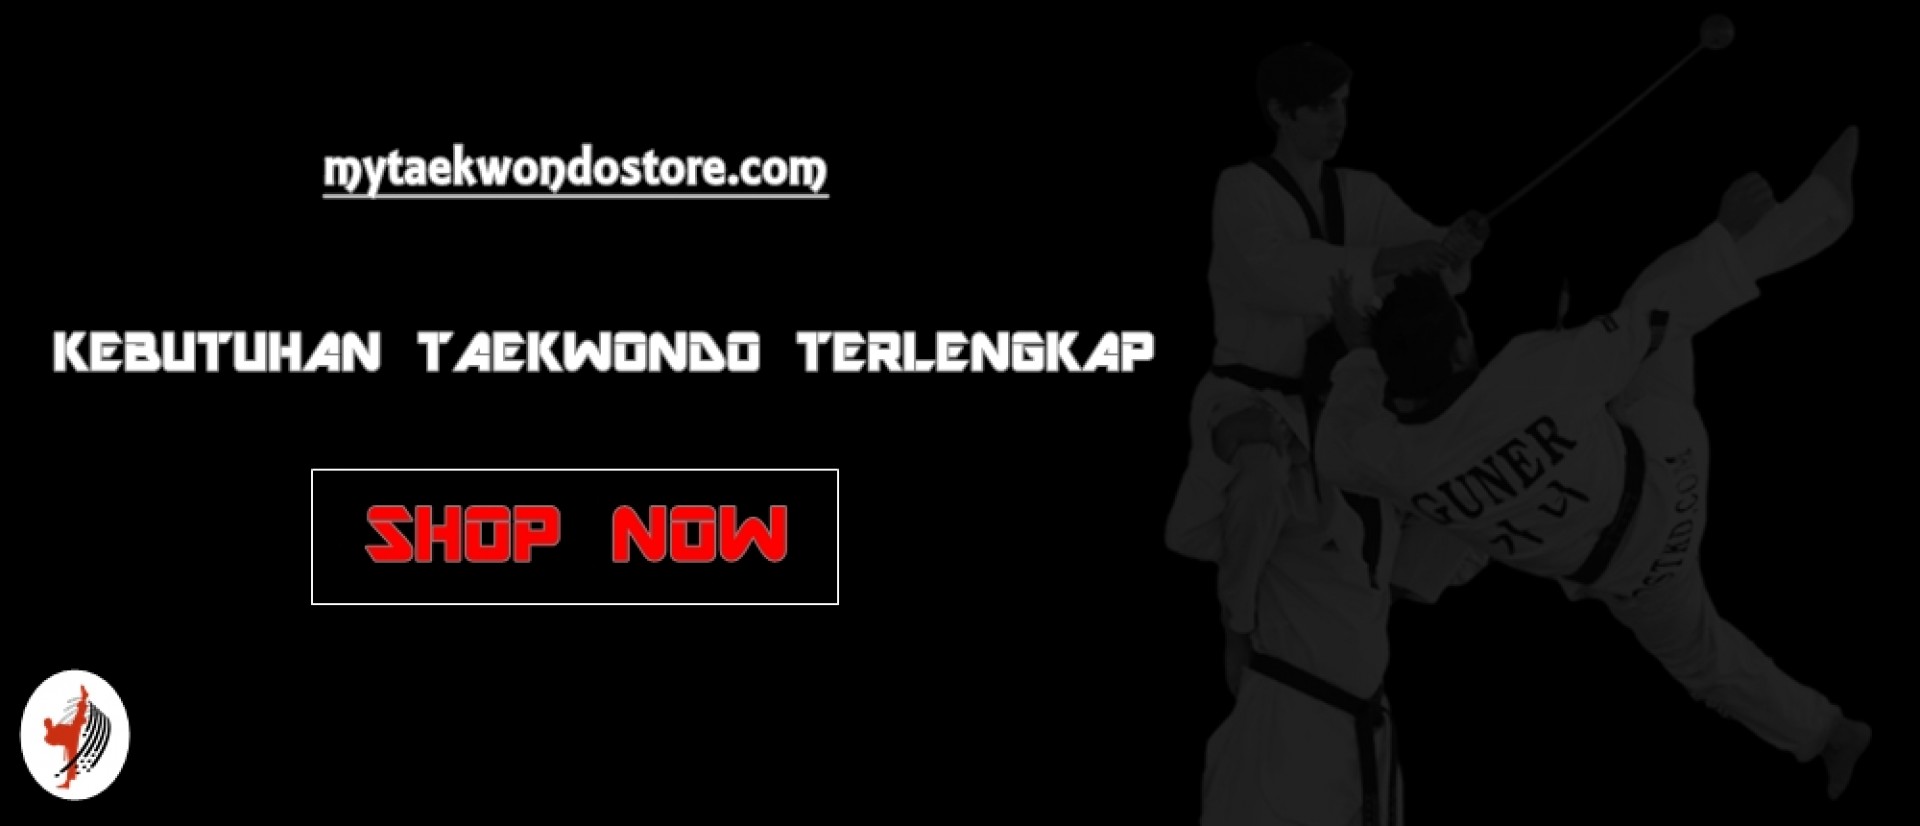 MY TAEKWONDO STORE  Menjual perlengkapan Taekwondo murah  